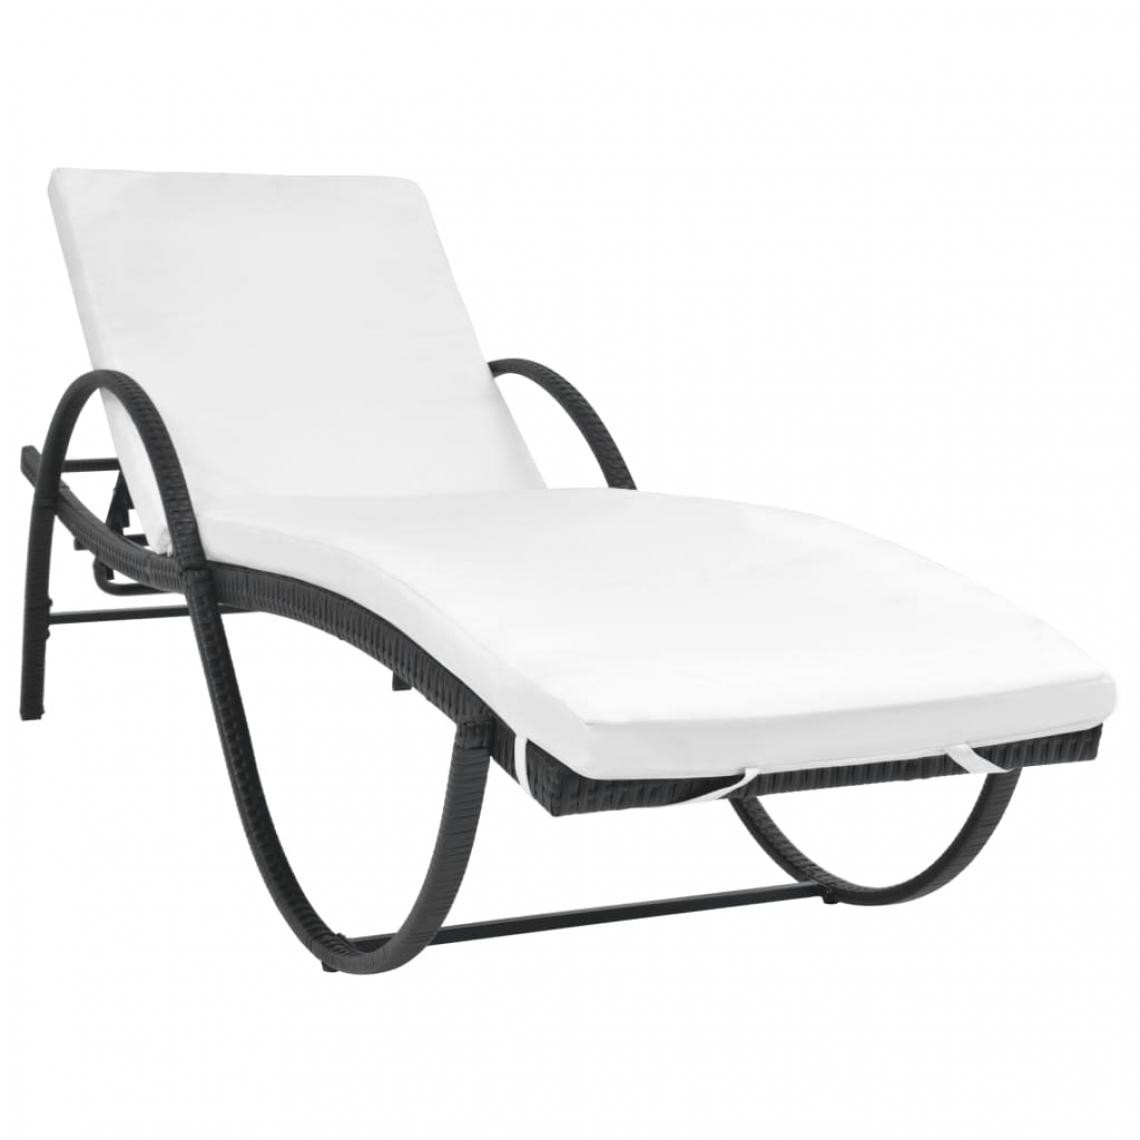 Icaverne - Icaverne - Bains de soleil famille Chaise longue avec Table Résine tissée Noir - Transats, chaises longues